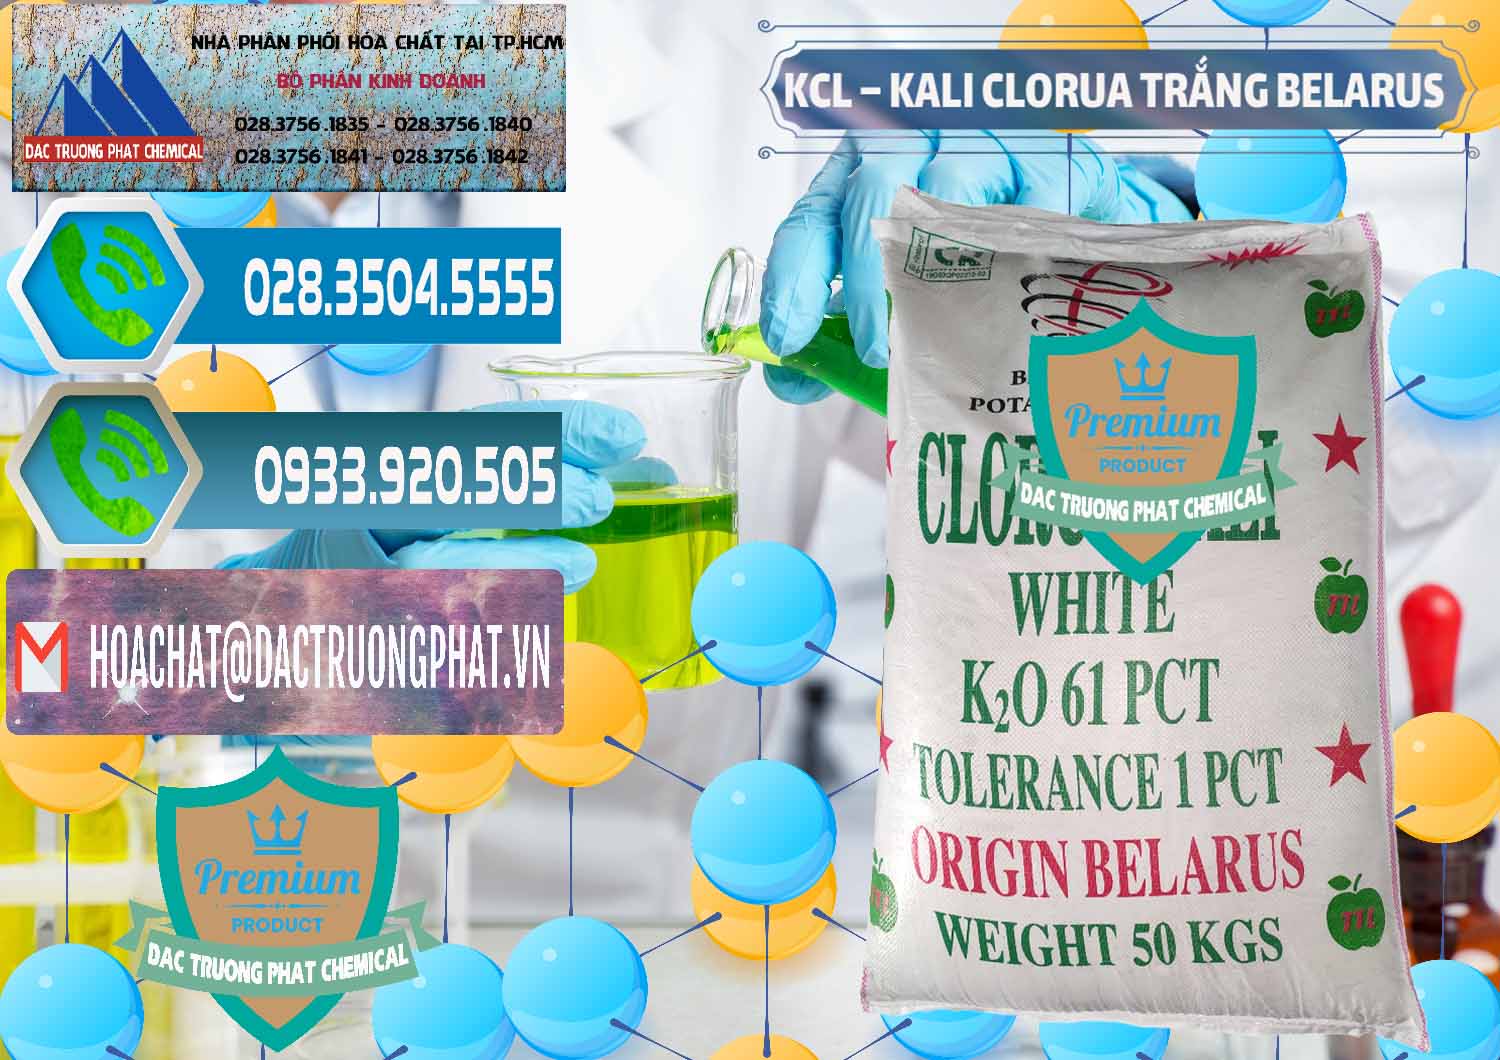 Nơi nhập khẩu & bán KCL – Kali Clorua Trắng Belarus - 0085 - Công ty nhập khẩu - phân phối hóa chất tại TP.HCM - congtyhoachat.net